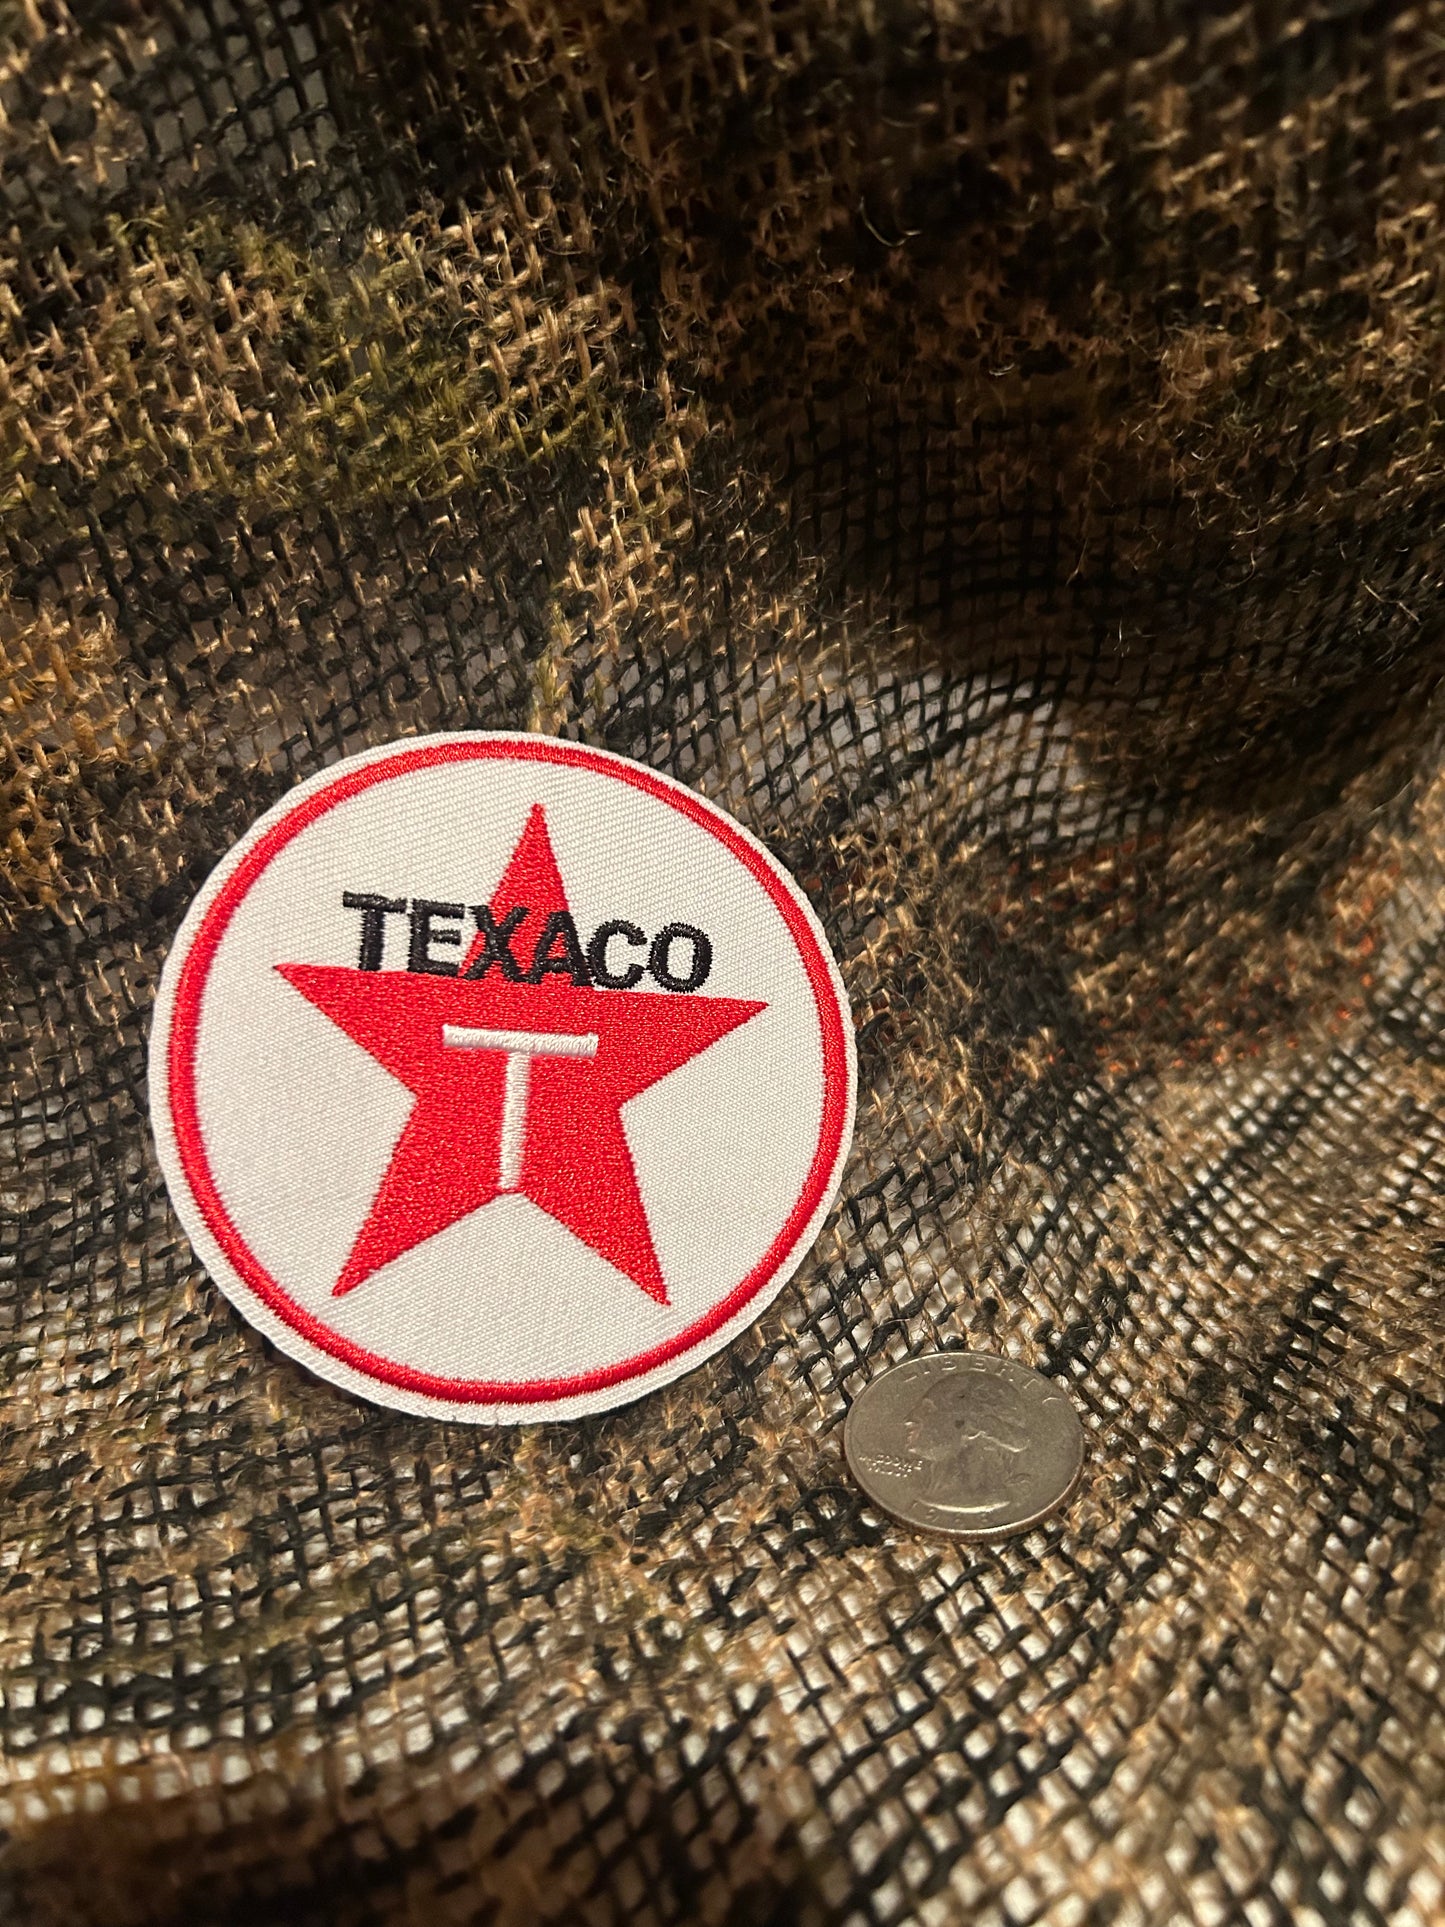 Texaco patch